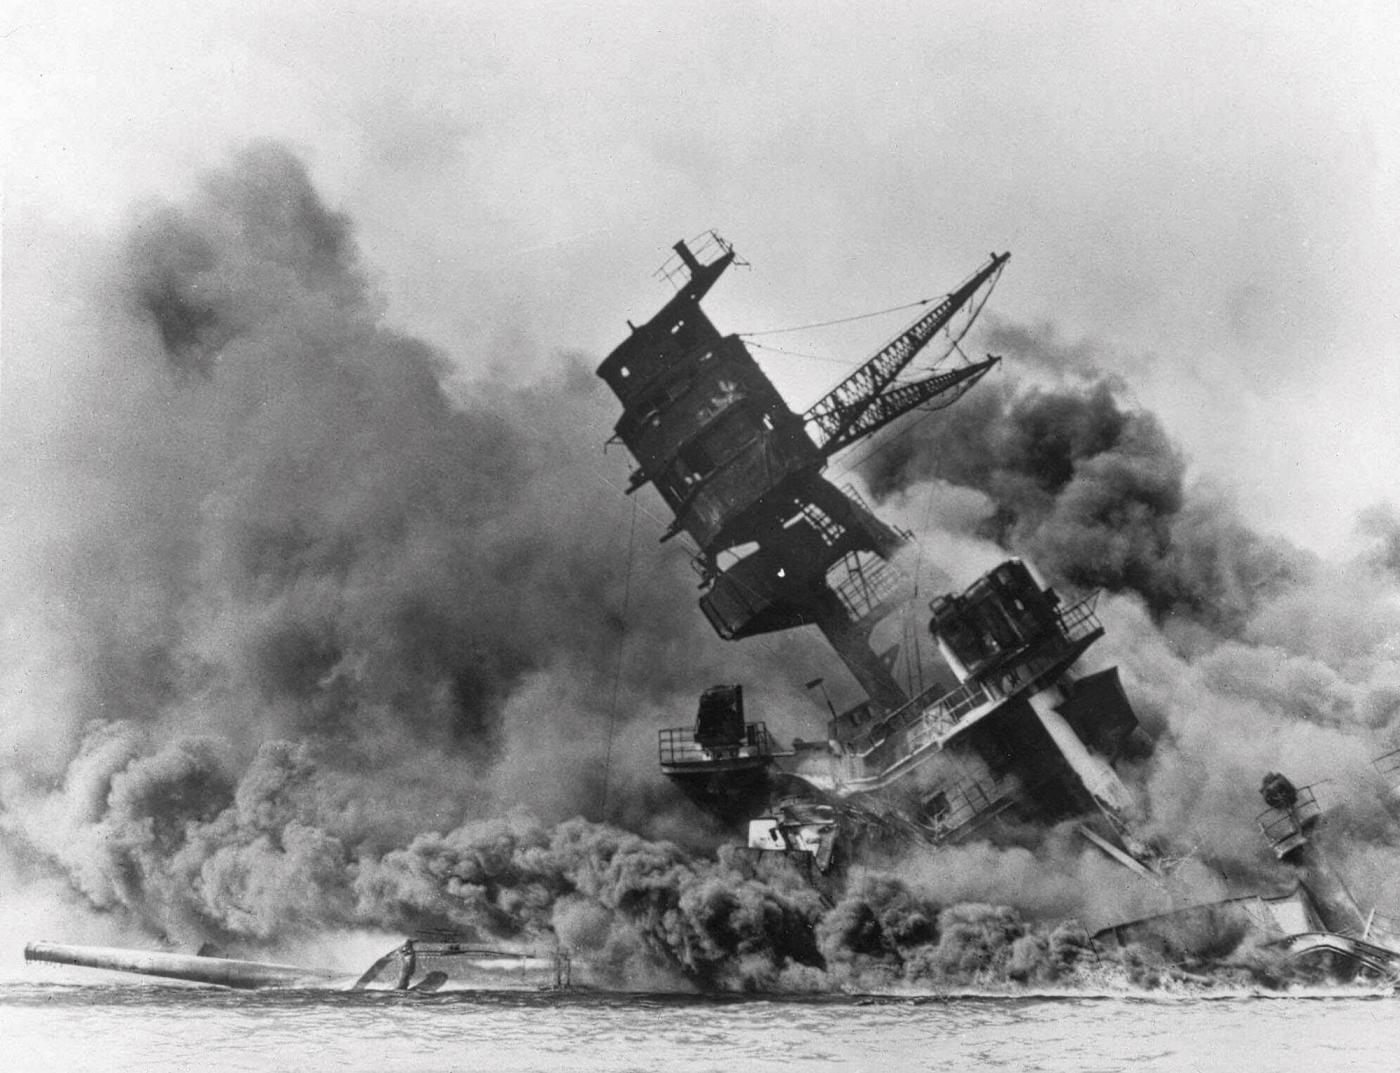 Ottantesimo anniversario di Pearl Harbor, Pastori: “Se si considera come fallimento dell’intelligence, un evento analogo potrebbe riaccadere”